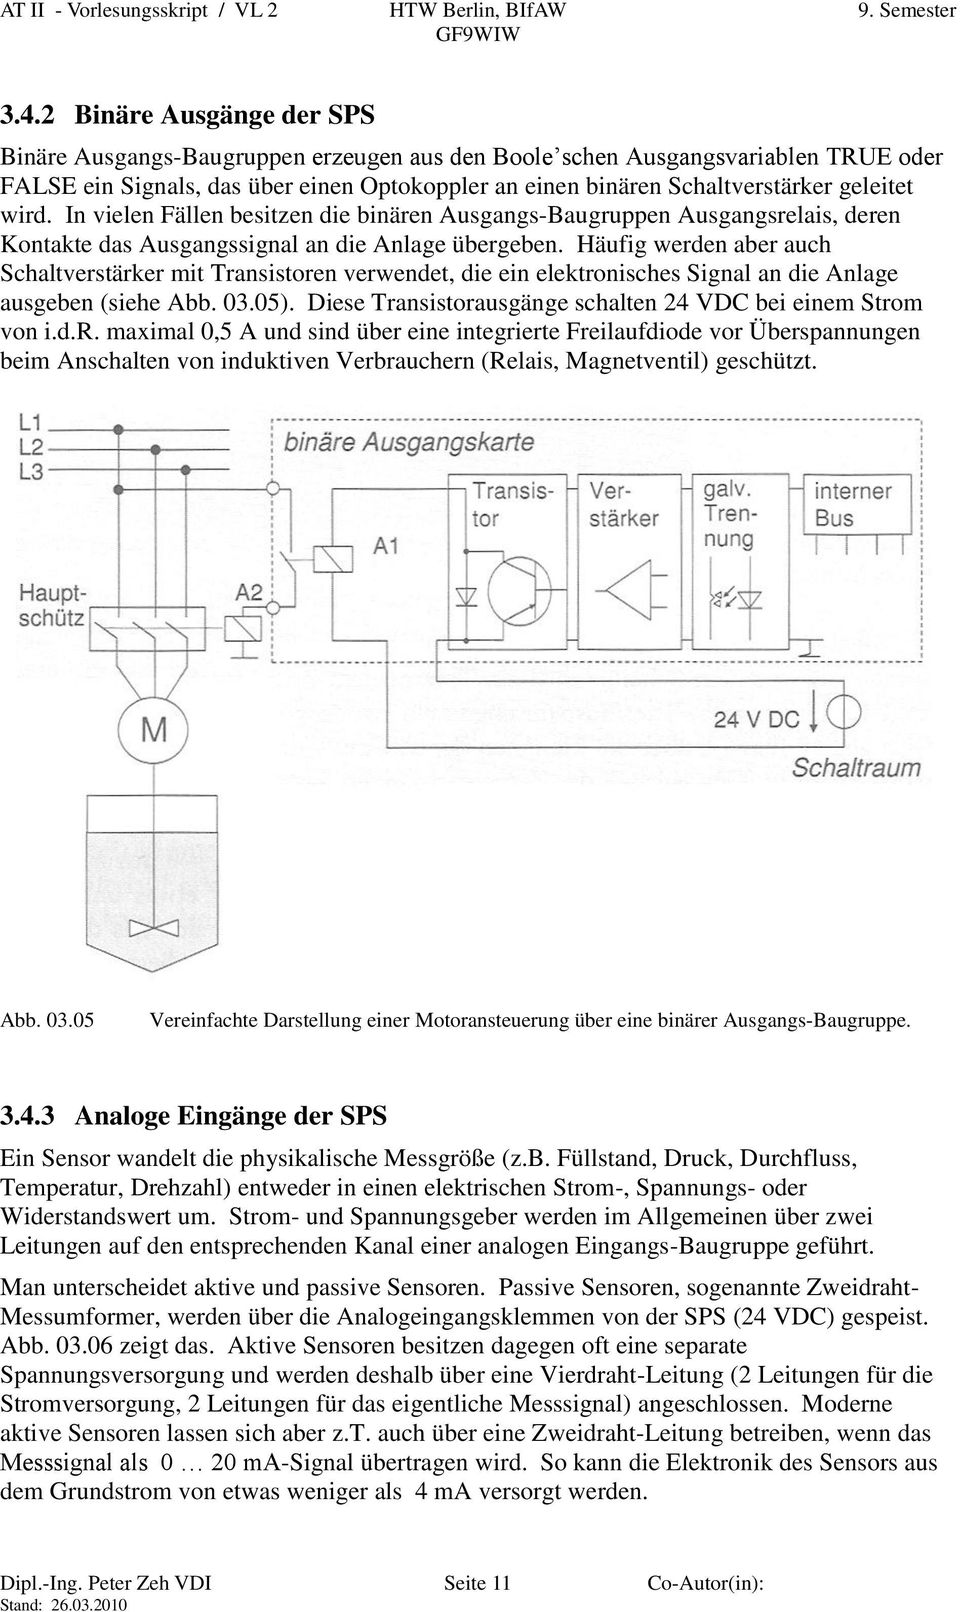 Häufig werden aber auch Schaltverstärker mit Transistoren verwendet, die ein elektronisches Signal an die Anlage ausgeben (siehe Abb. 03.05).